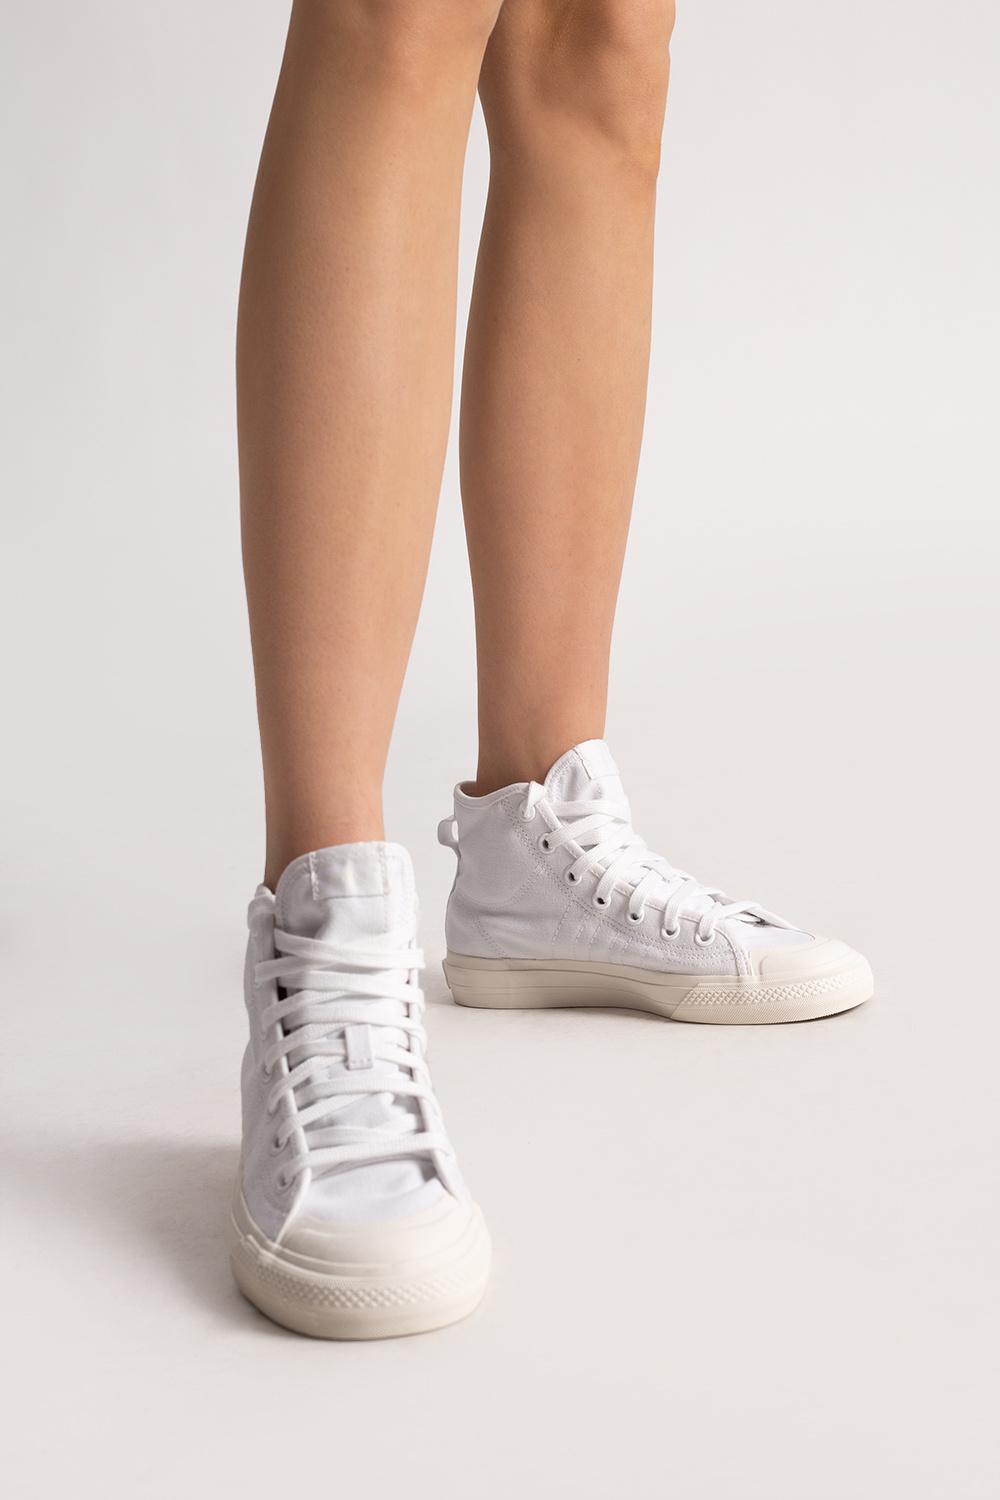 Pinpoint Måske Bekendtgørelse adidas Originals 'nizza Hi Rf' High-top Sneakers in White | Lyst UK